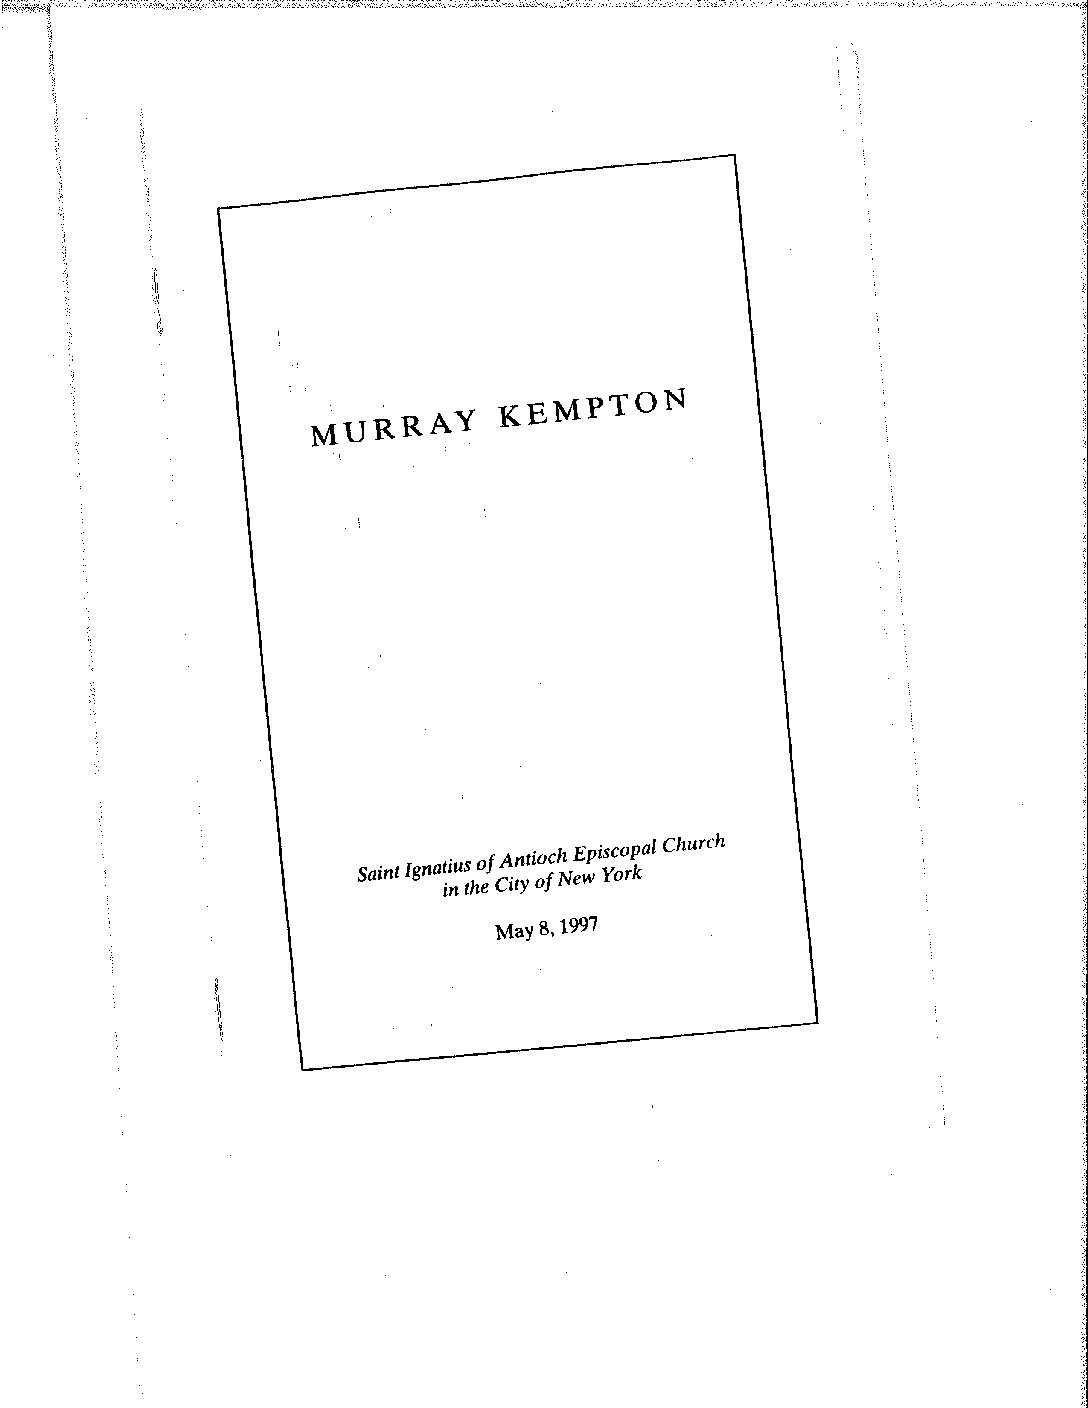 Murray Kempton